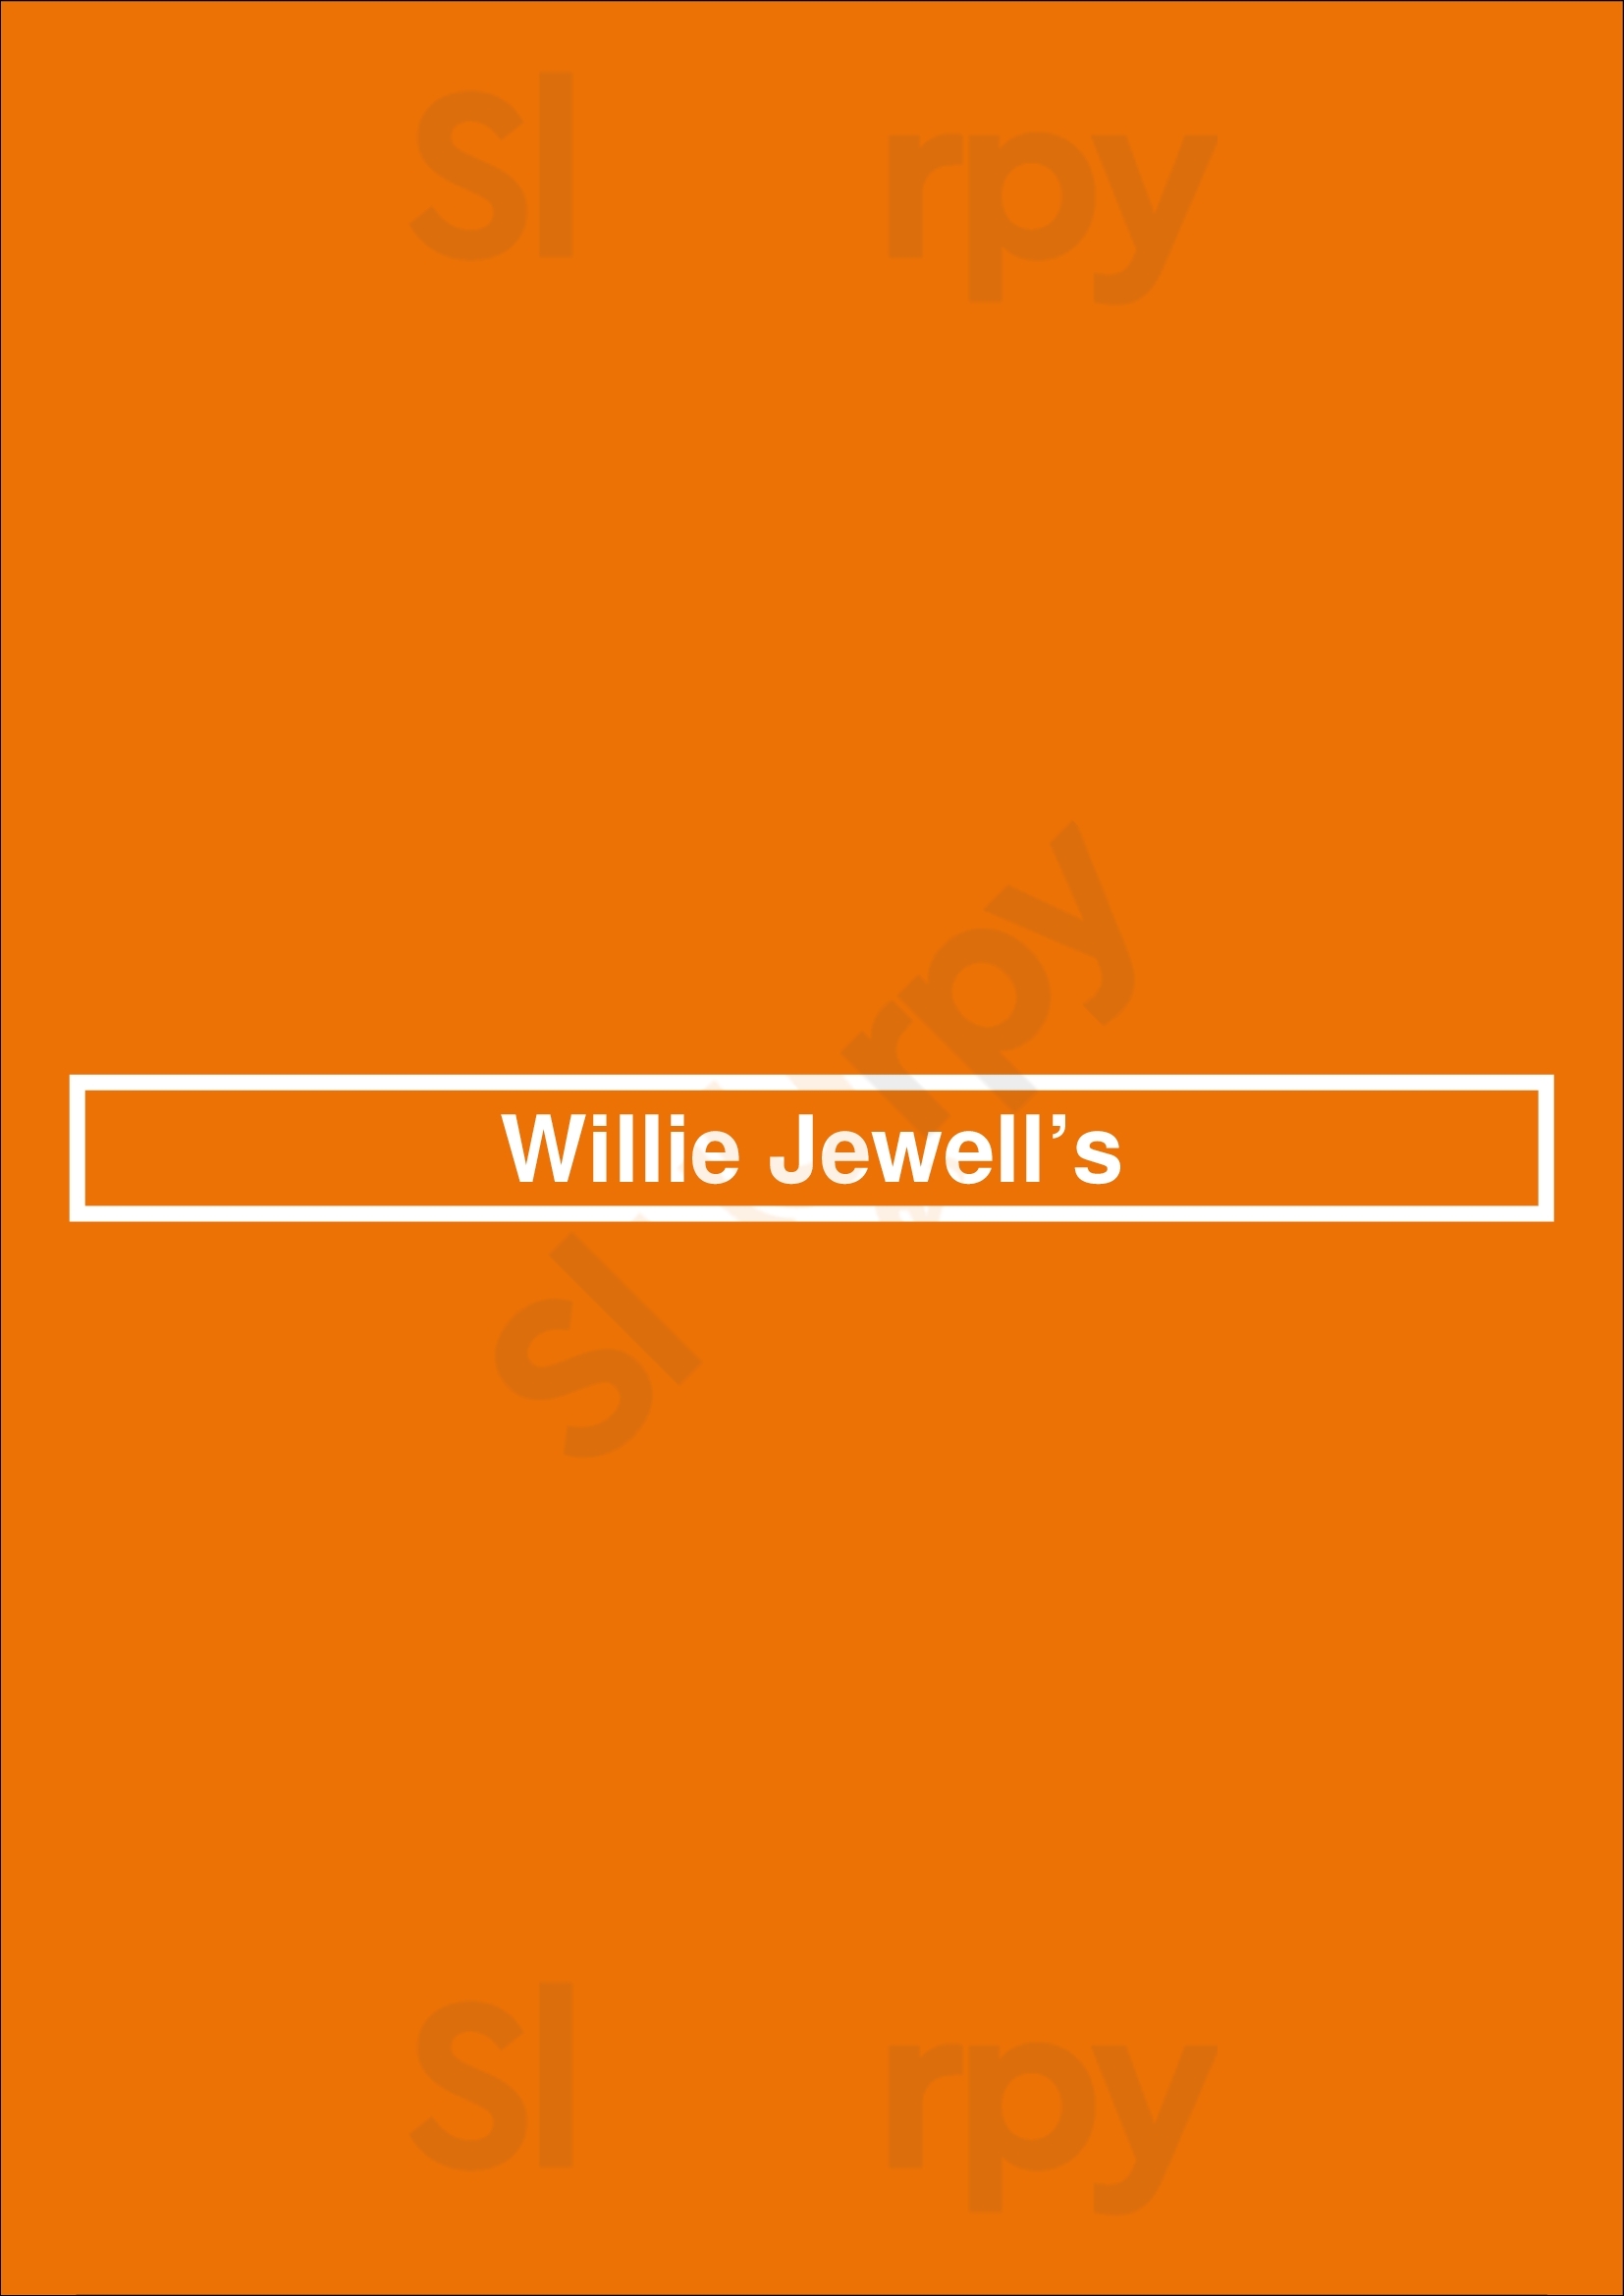 Willie Jewell's Old School Bar-b-q Carrollwood Tampa Menu - 1